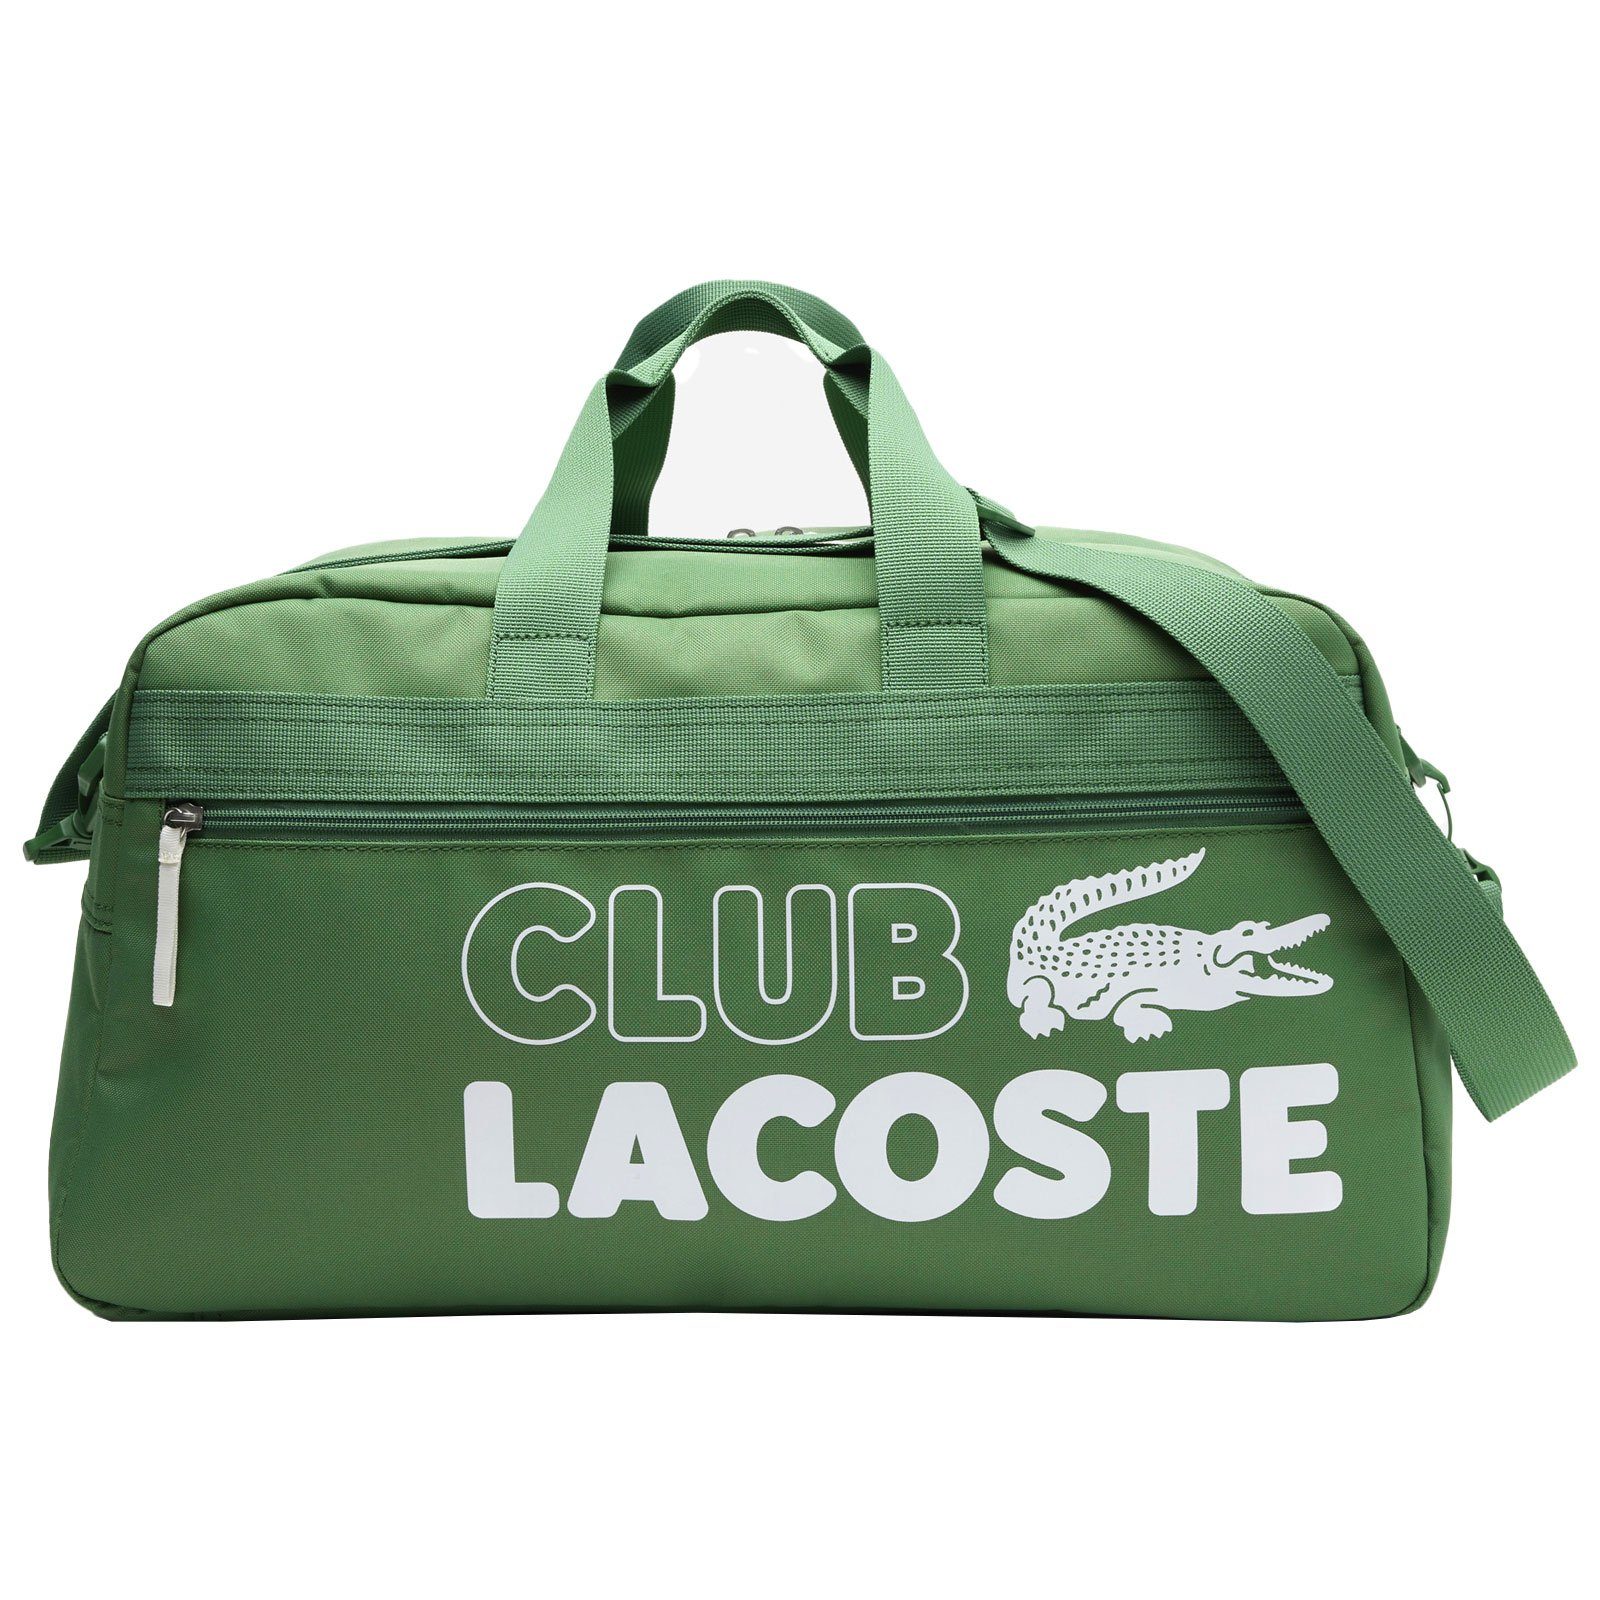 Lacoste Sporttasche Gym Bag, mit Schriftzug auffälligem und Logo